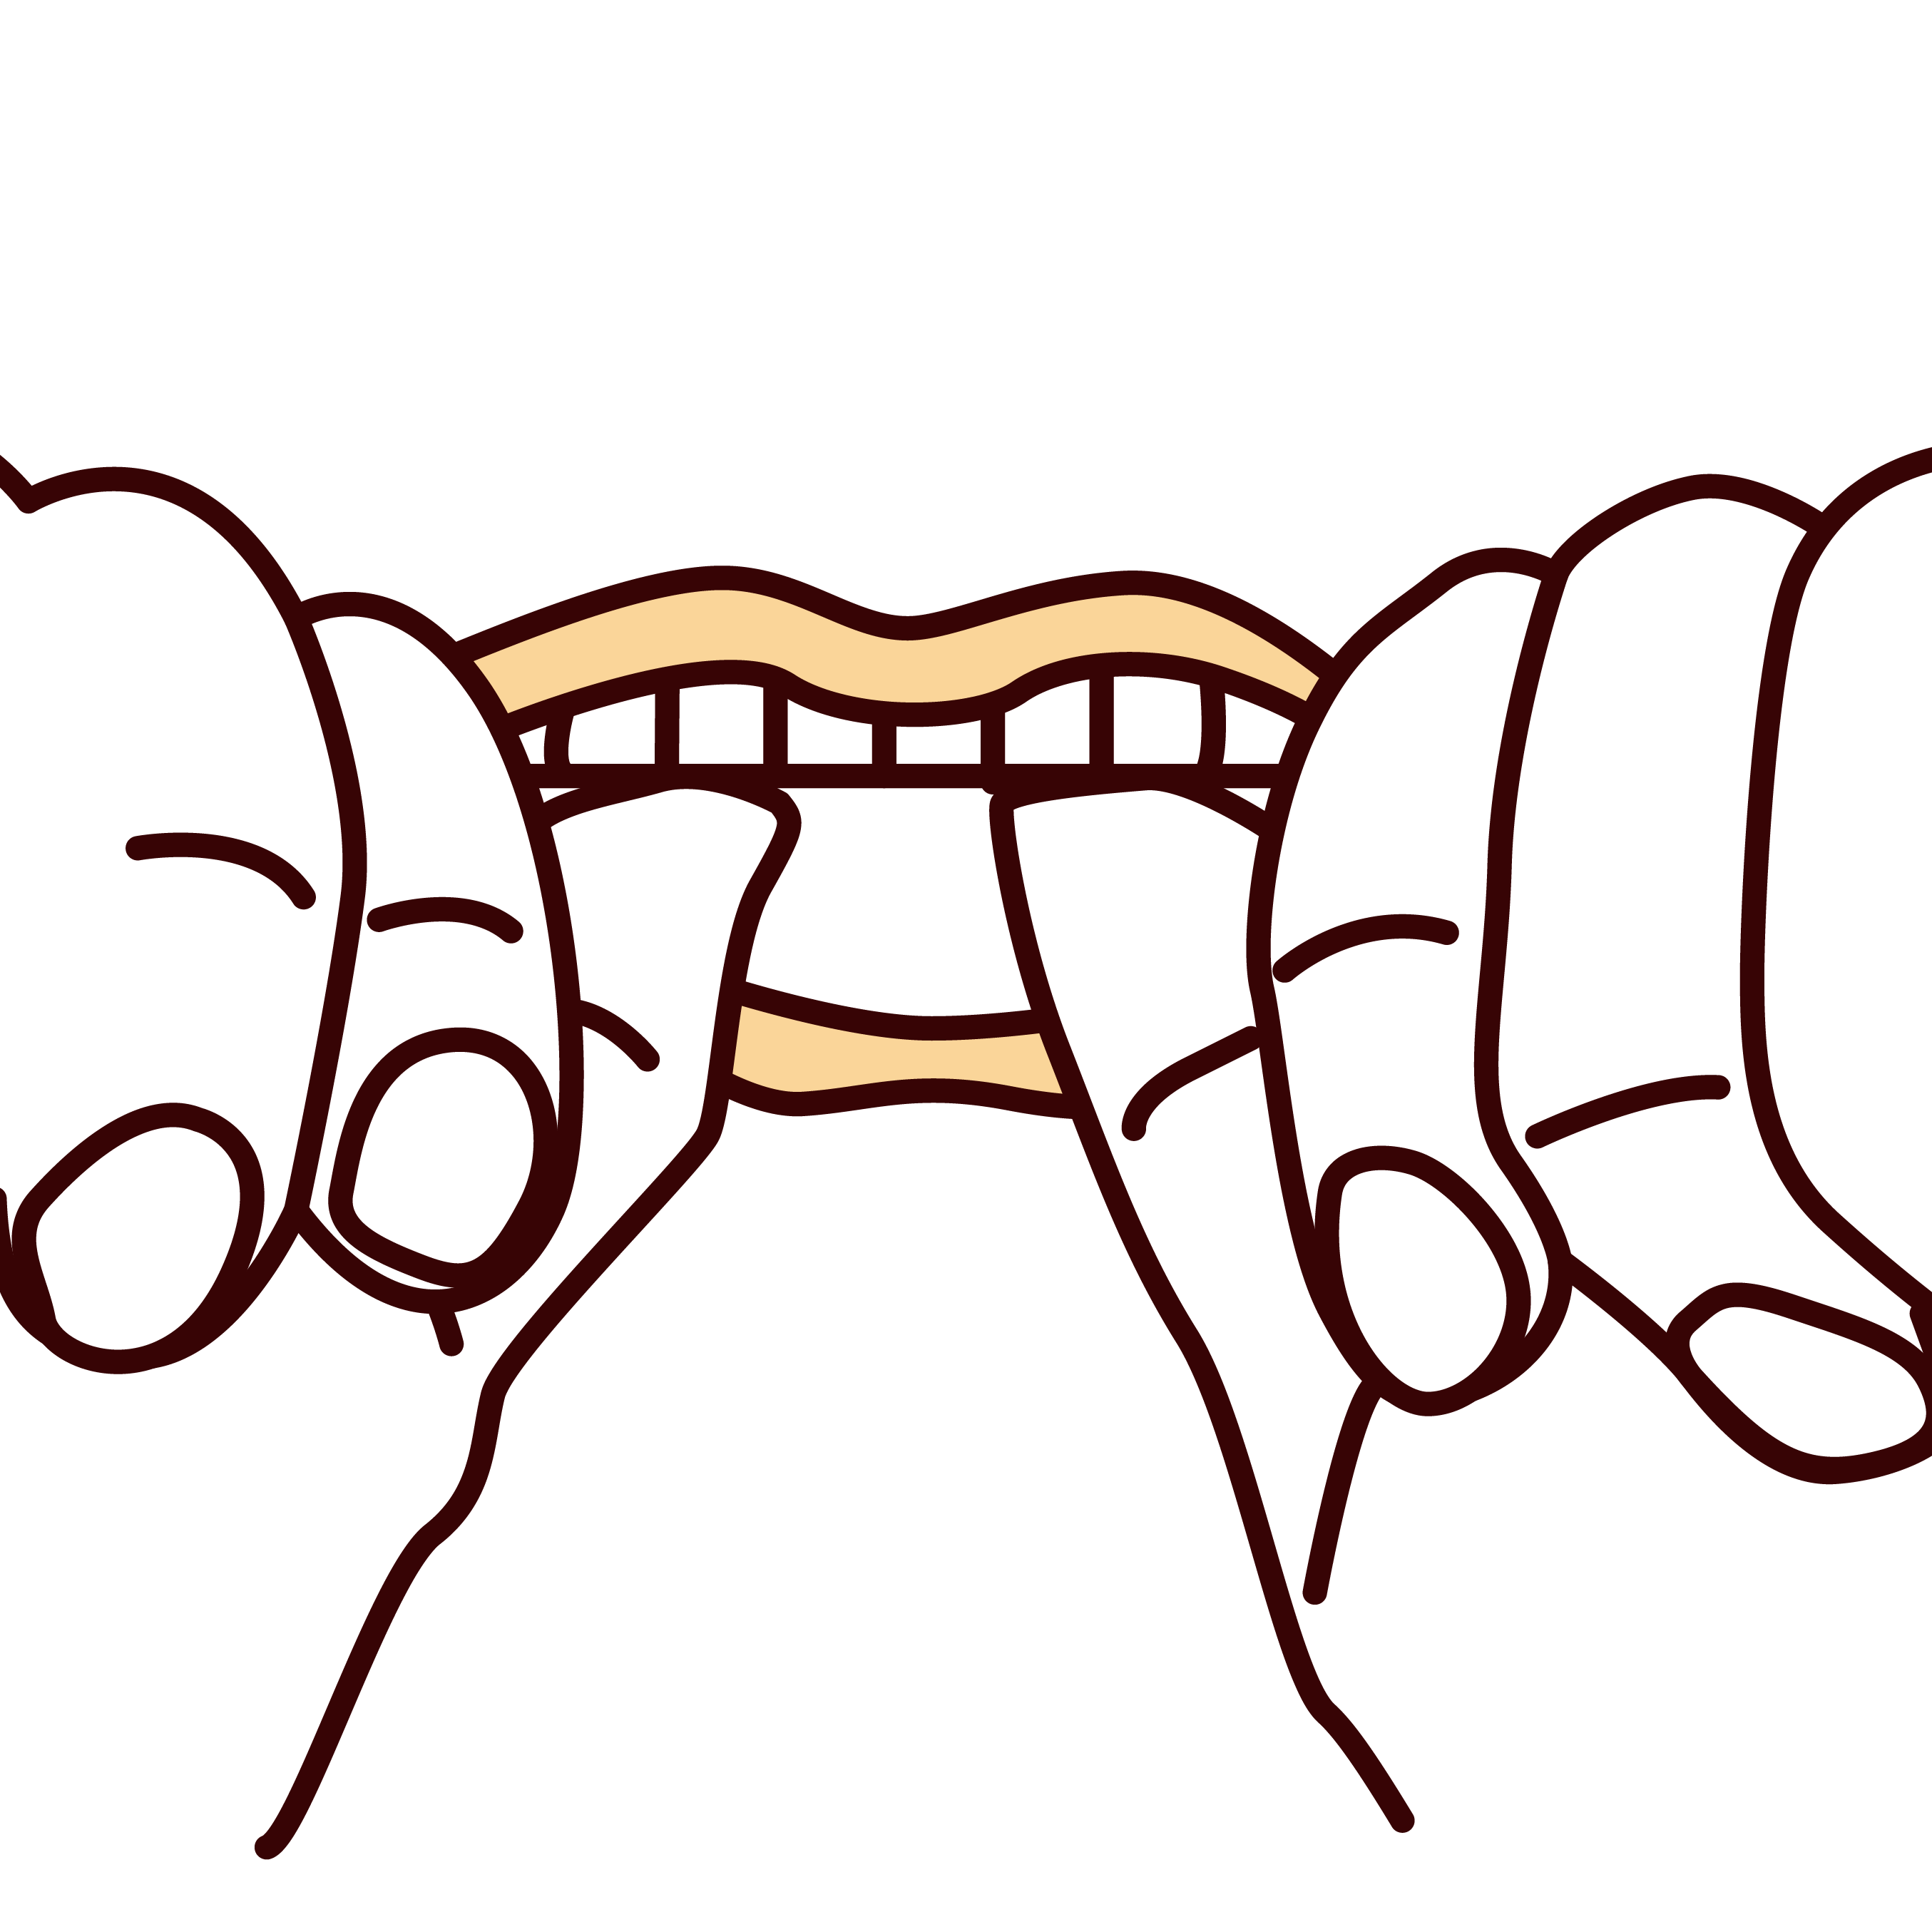 1.装着時には、ワイヤーの位置は前歯の真ん中にくるようにして、親指でプラスチックを押して下さい。